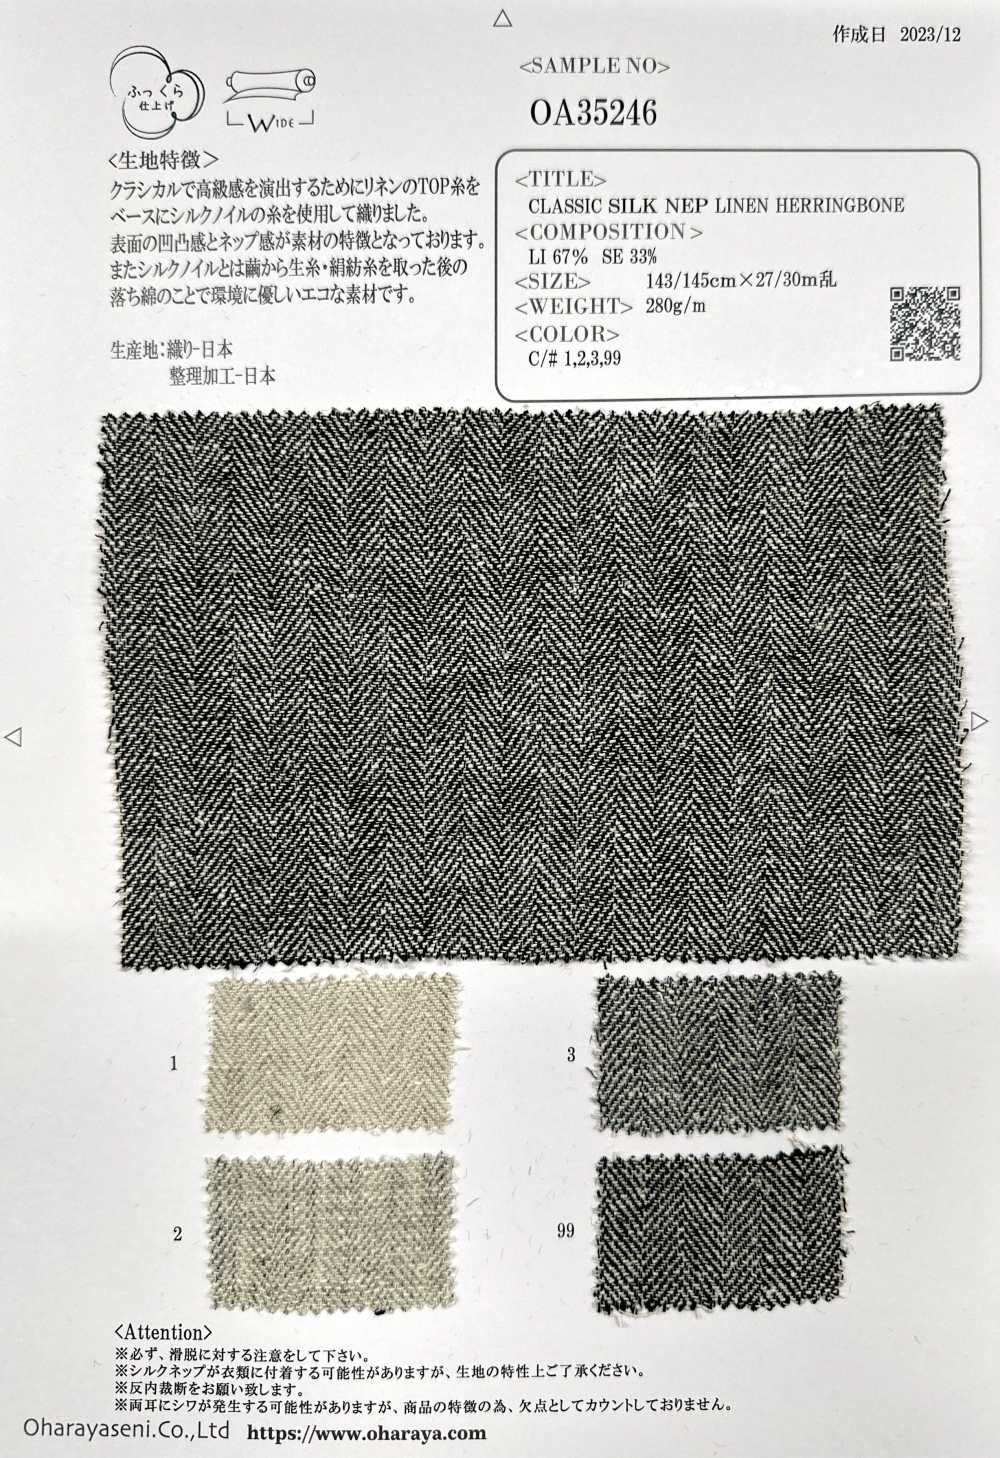 OA35246 CLÁSICO SEDA NEP LINO ESPIGA[Fabrica Textil] Oharayaseni